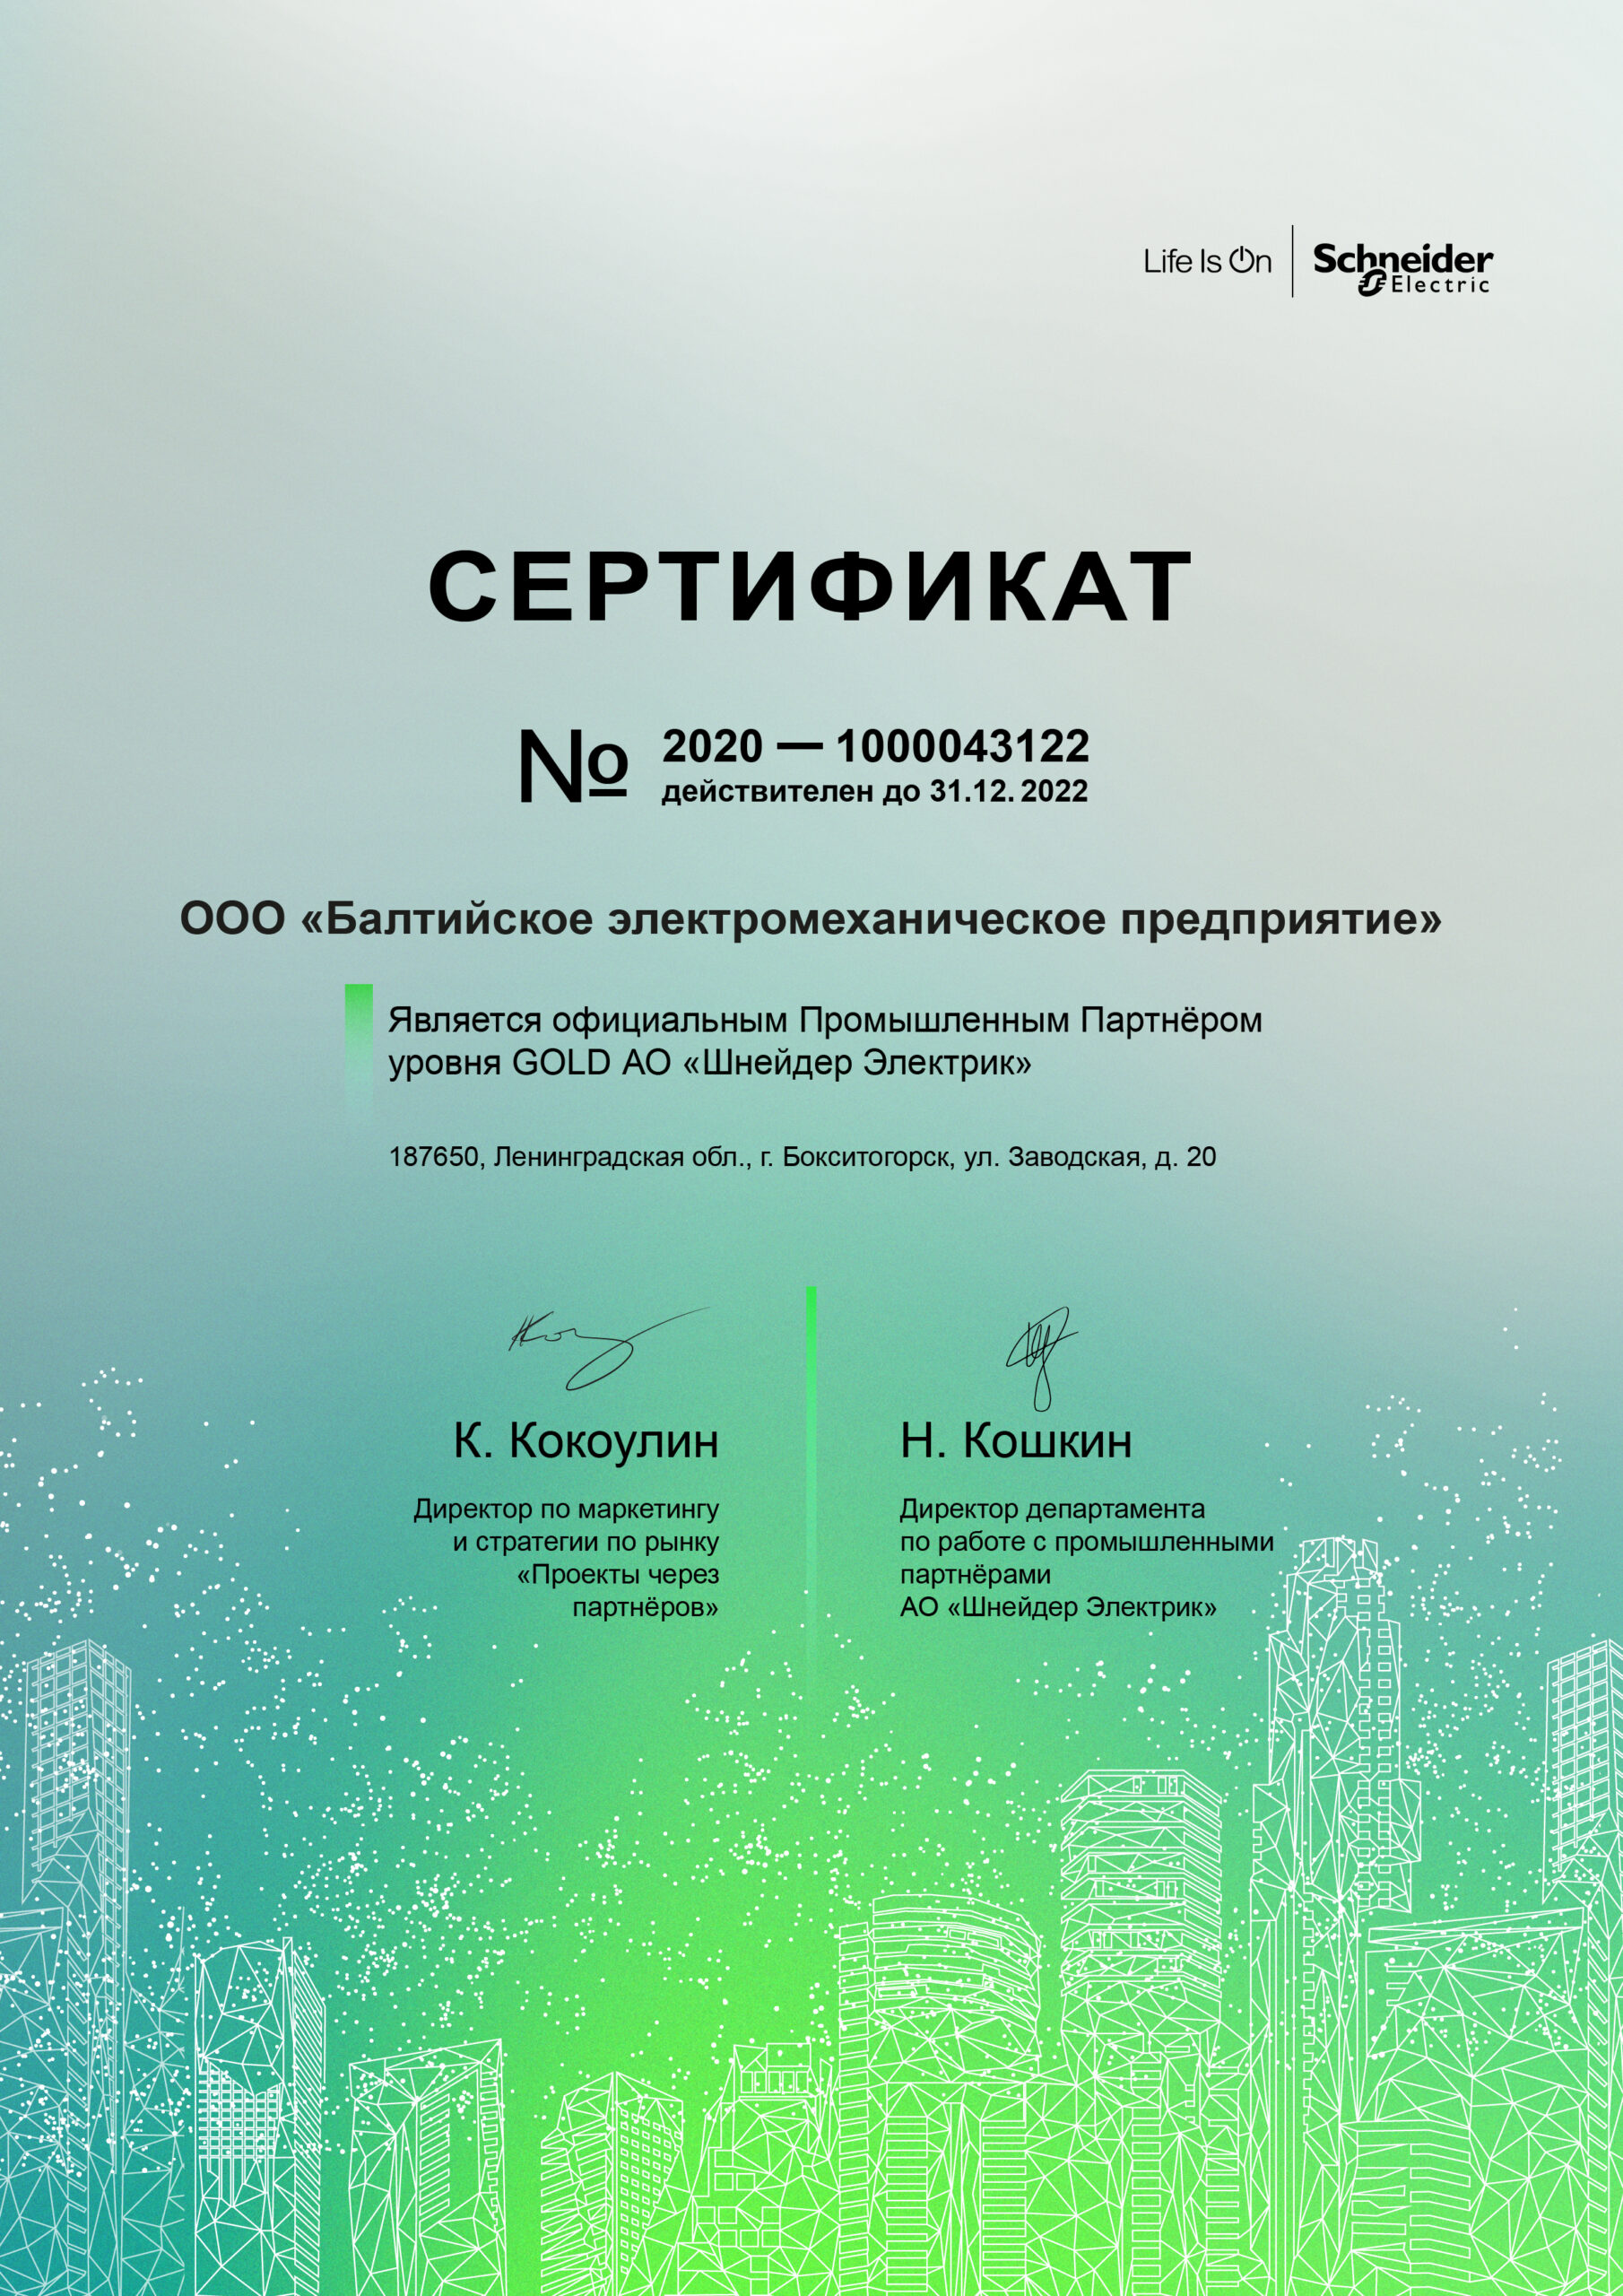 Сертификат промышленного партнера уровня GOLD АО «Шнейдер Электрик» до 31.12.2022